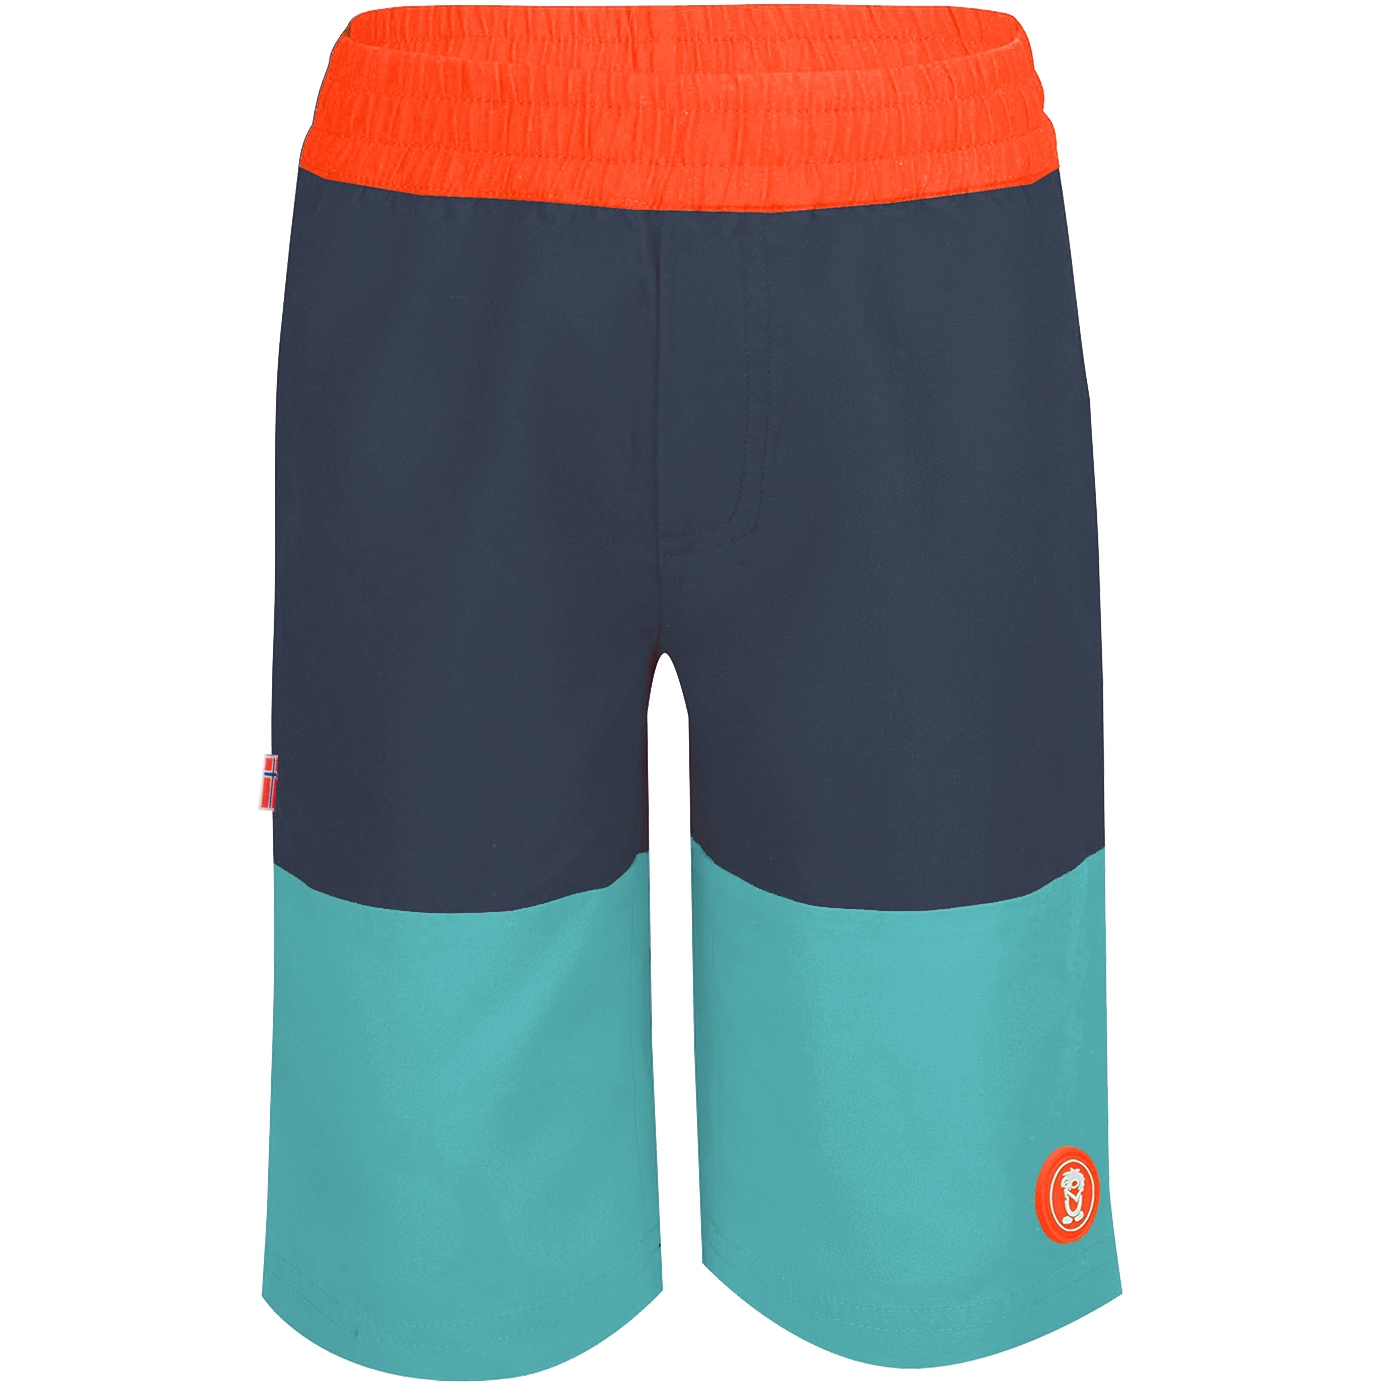 Produktbild von Trollkids Kroksand Shorts Kinder - dark navy/glow orange/dusky turquoise